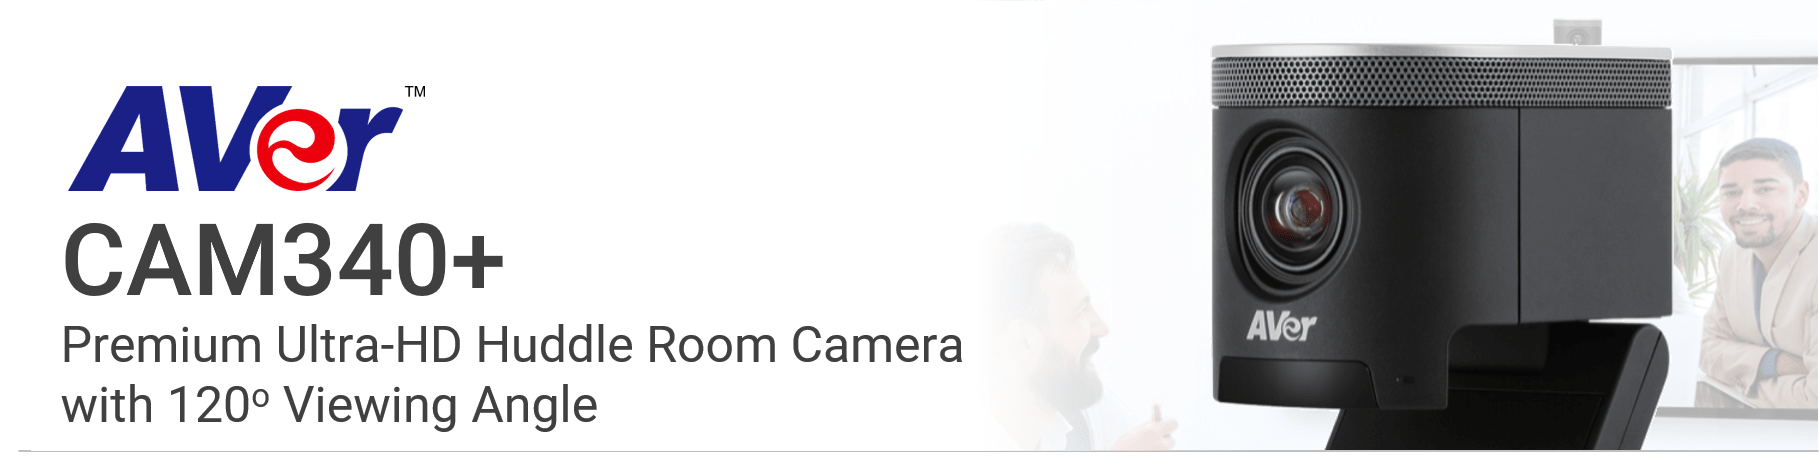 AVer CAM340+ Huddle Room Camera from VCGear.com